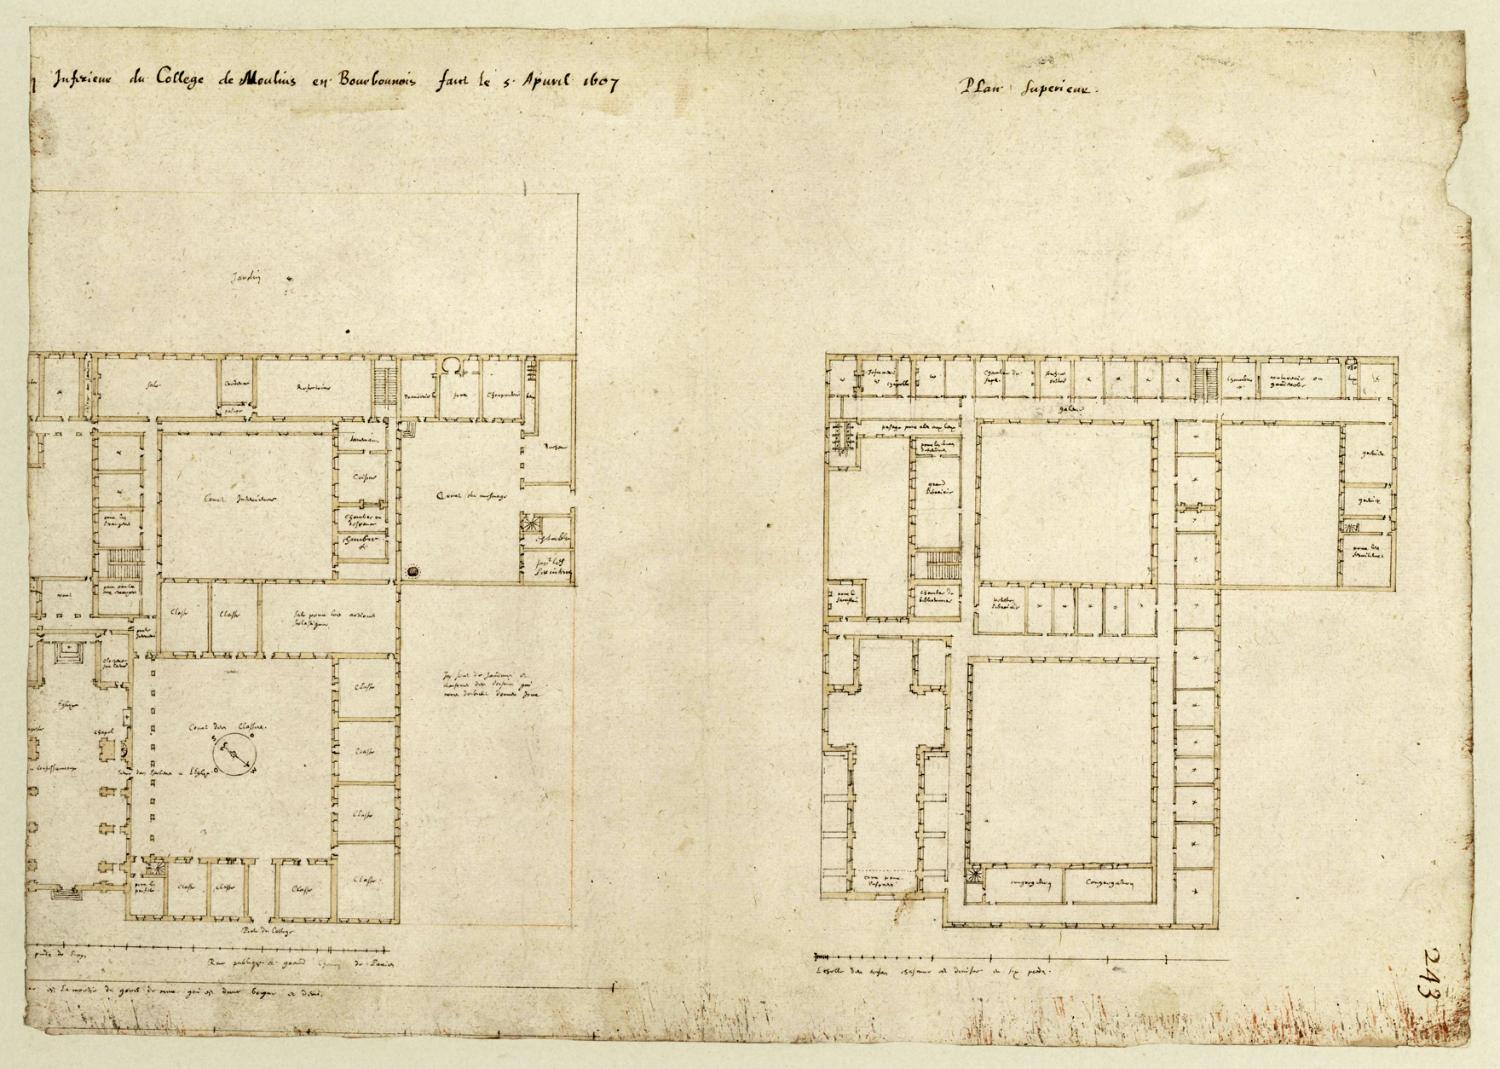 Projet pour le collège de Moulins : plans du rez-de-chaussée et du 1er étage par Etienne Martellange, 5 avril 1607 (Quimper, Médiathèque, Ms 179, fol. 243